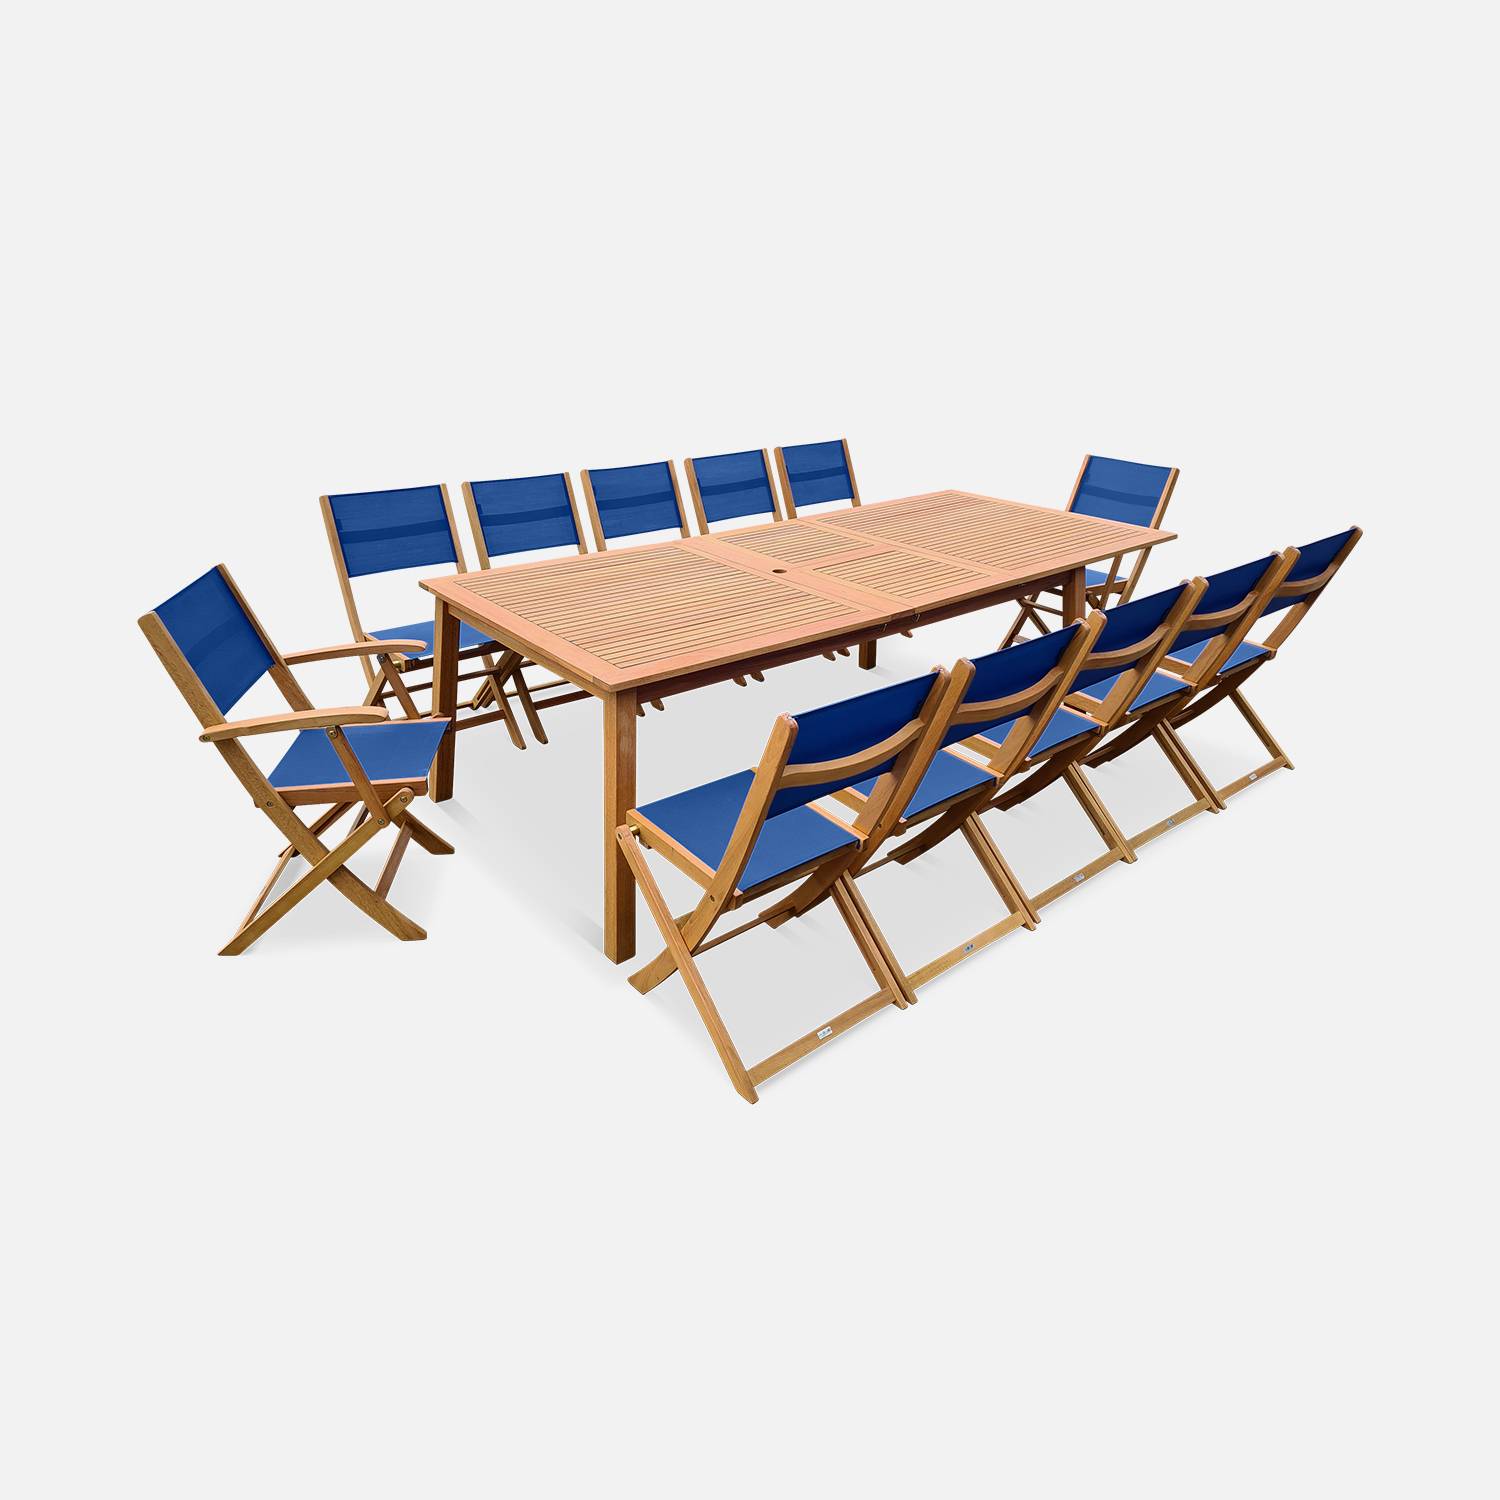 Almera tuinset Nachtblauw, uitschuifbare tafel 200/250/300cm met 2 verlengstukken, 8 stoelen en 2 armstoelen, inklapbaar, FSC-eucalyptus hout en textileen Photo1